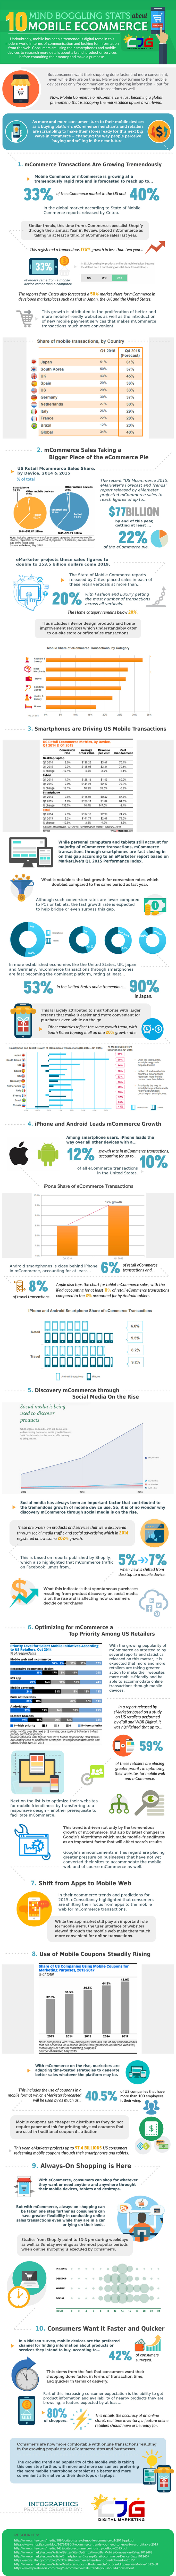 mobilecommerce.statistieken